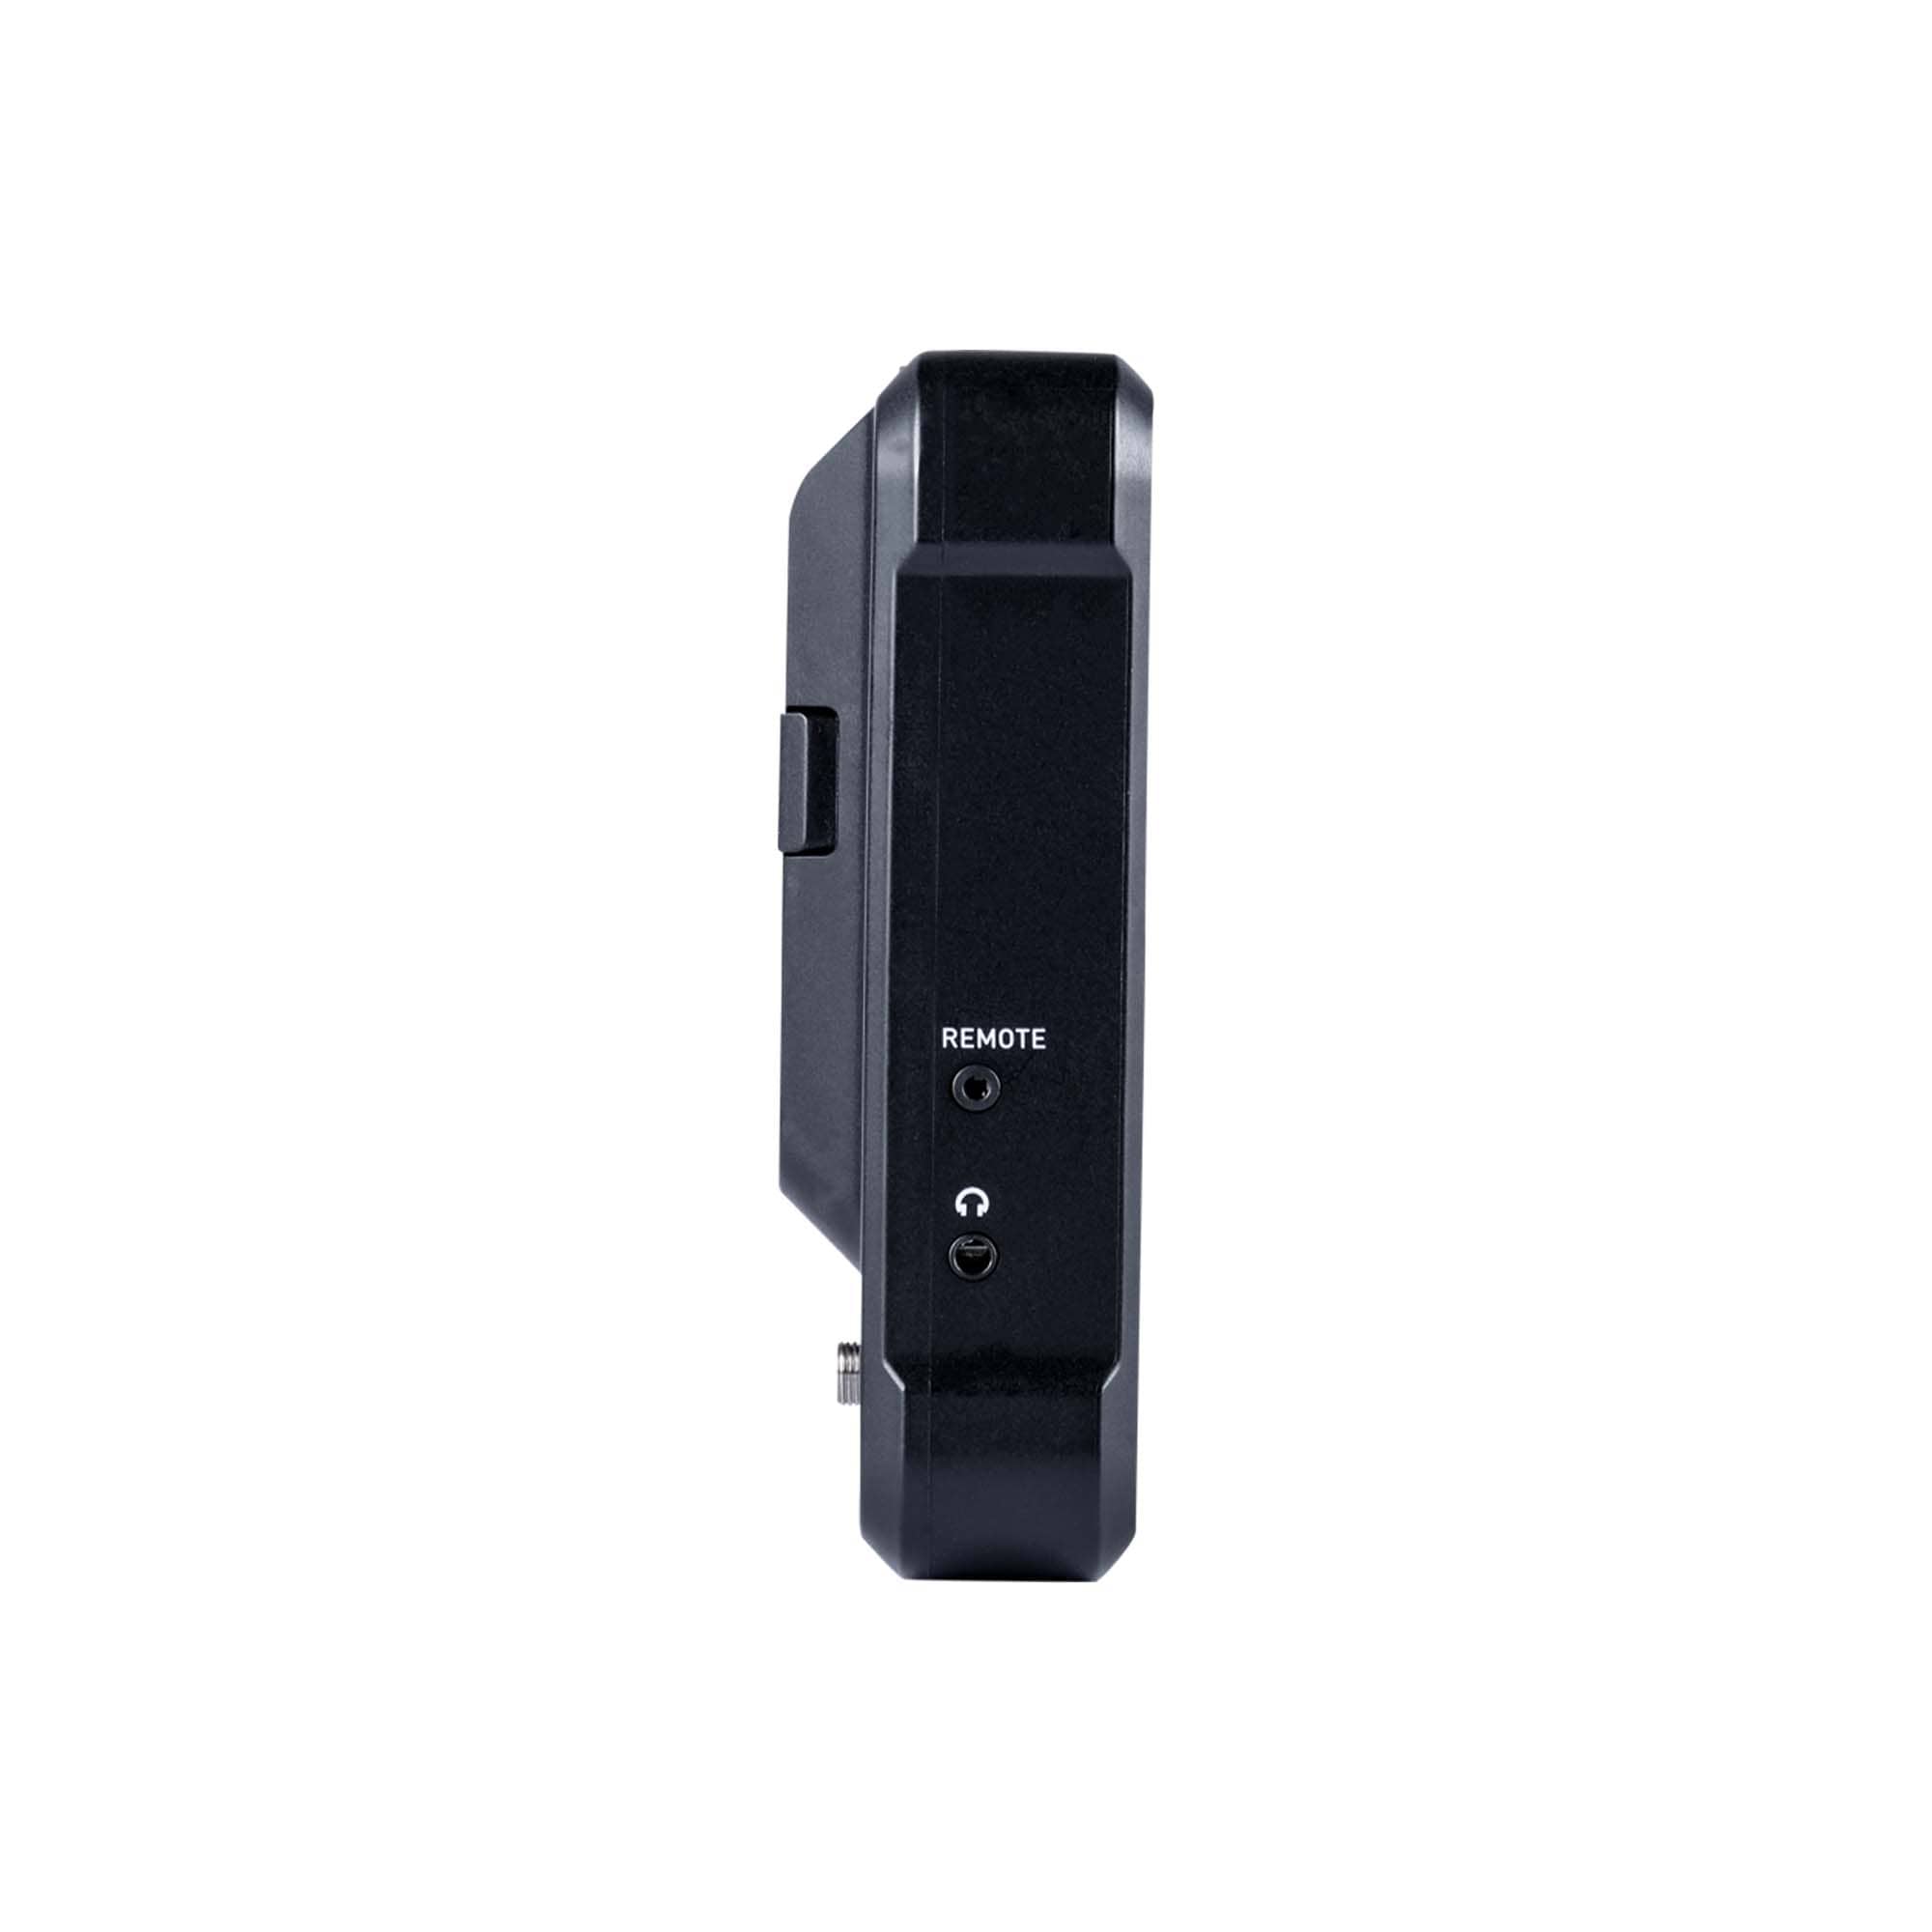 Atomos Shinobi 7 - 7” 4K HDMI & SDI HDR Photo & Video Monitor